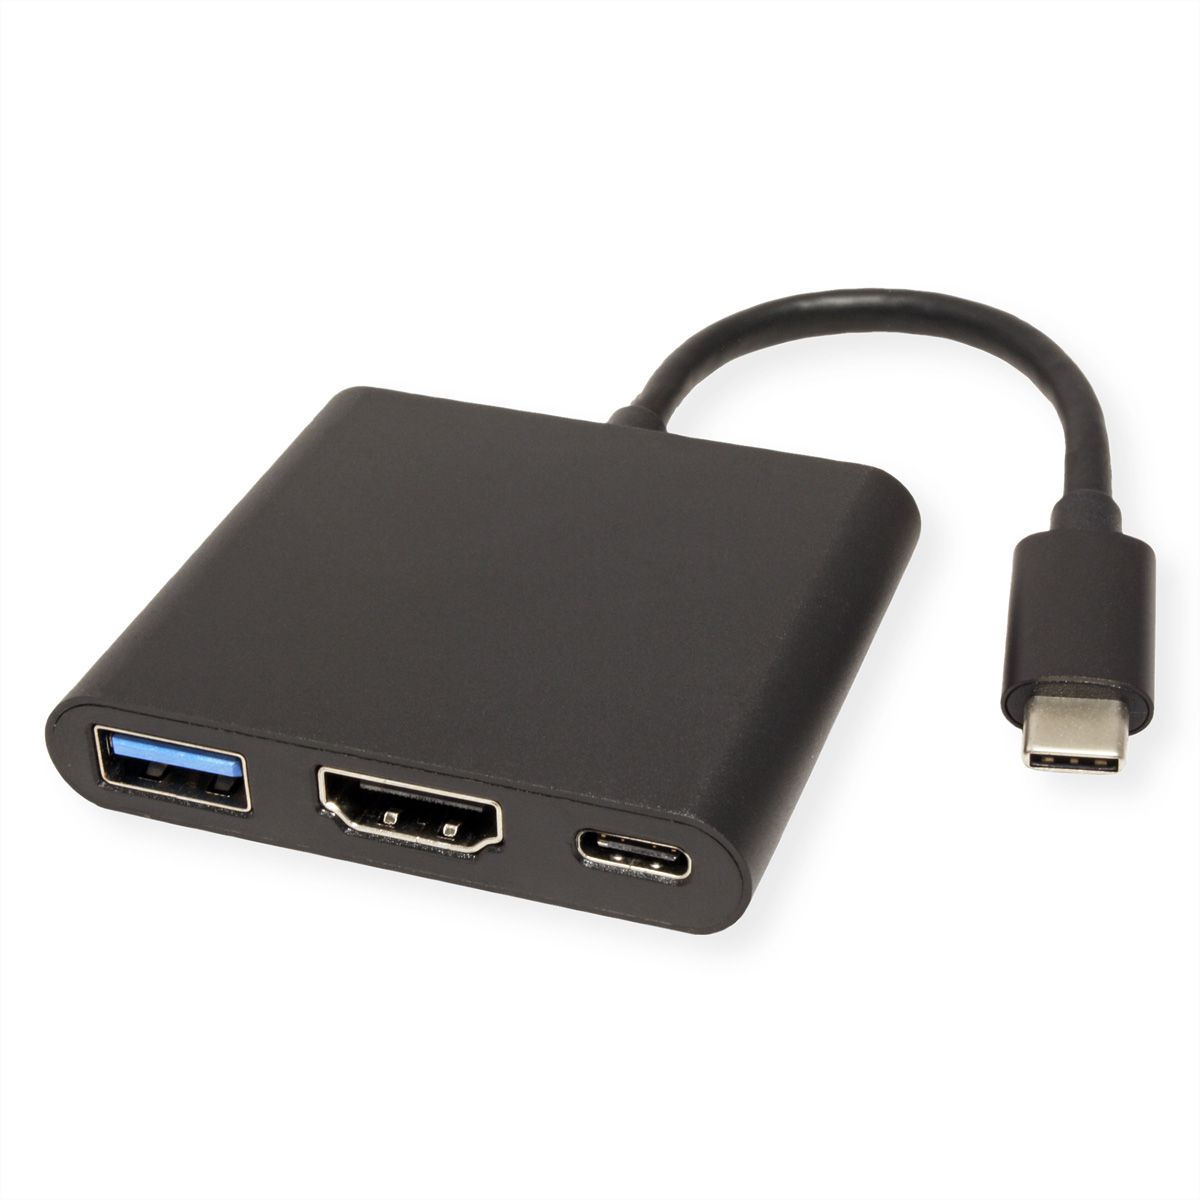 Convertisseur USB A vers HDMI - Connexion 1 : USB A mâle Connexion 2 : HDMI  femelle Résolution maximale : Full HD@60Hz